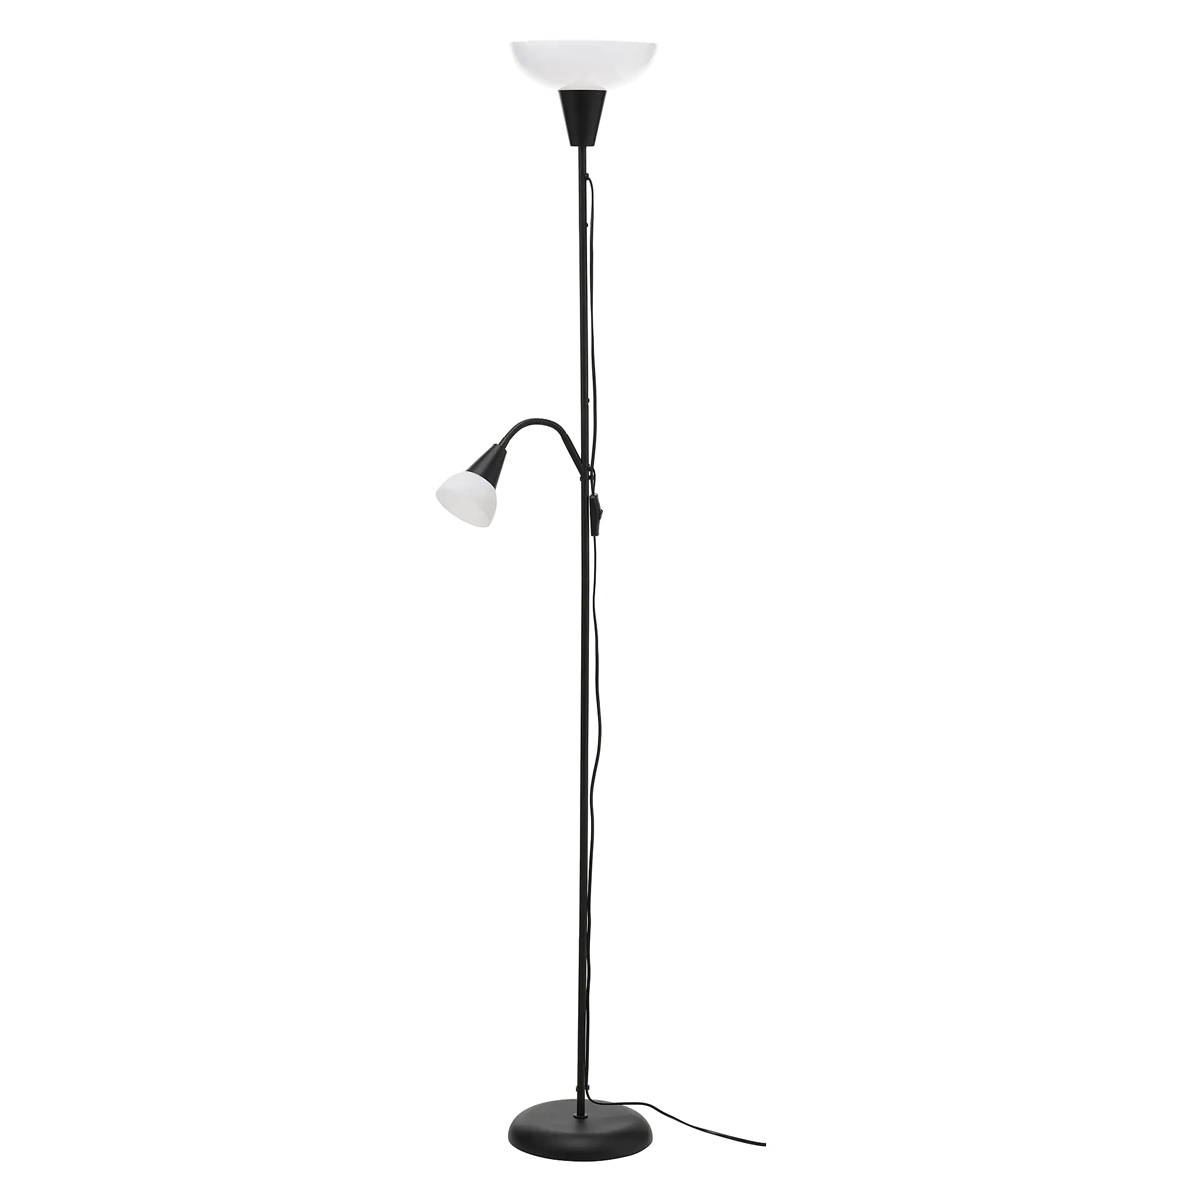 TAGARP 178cm podna lampa sa dodatkom za citanje, crna/bijela